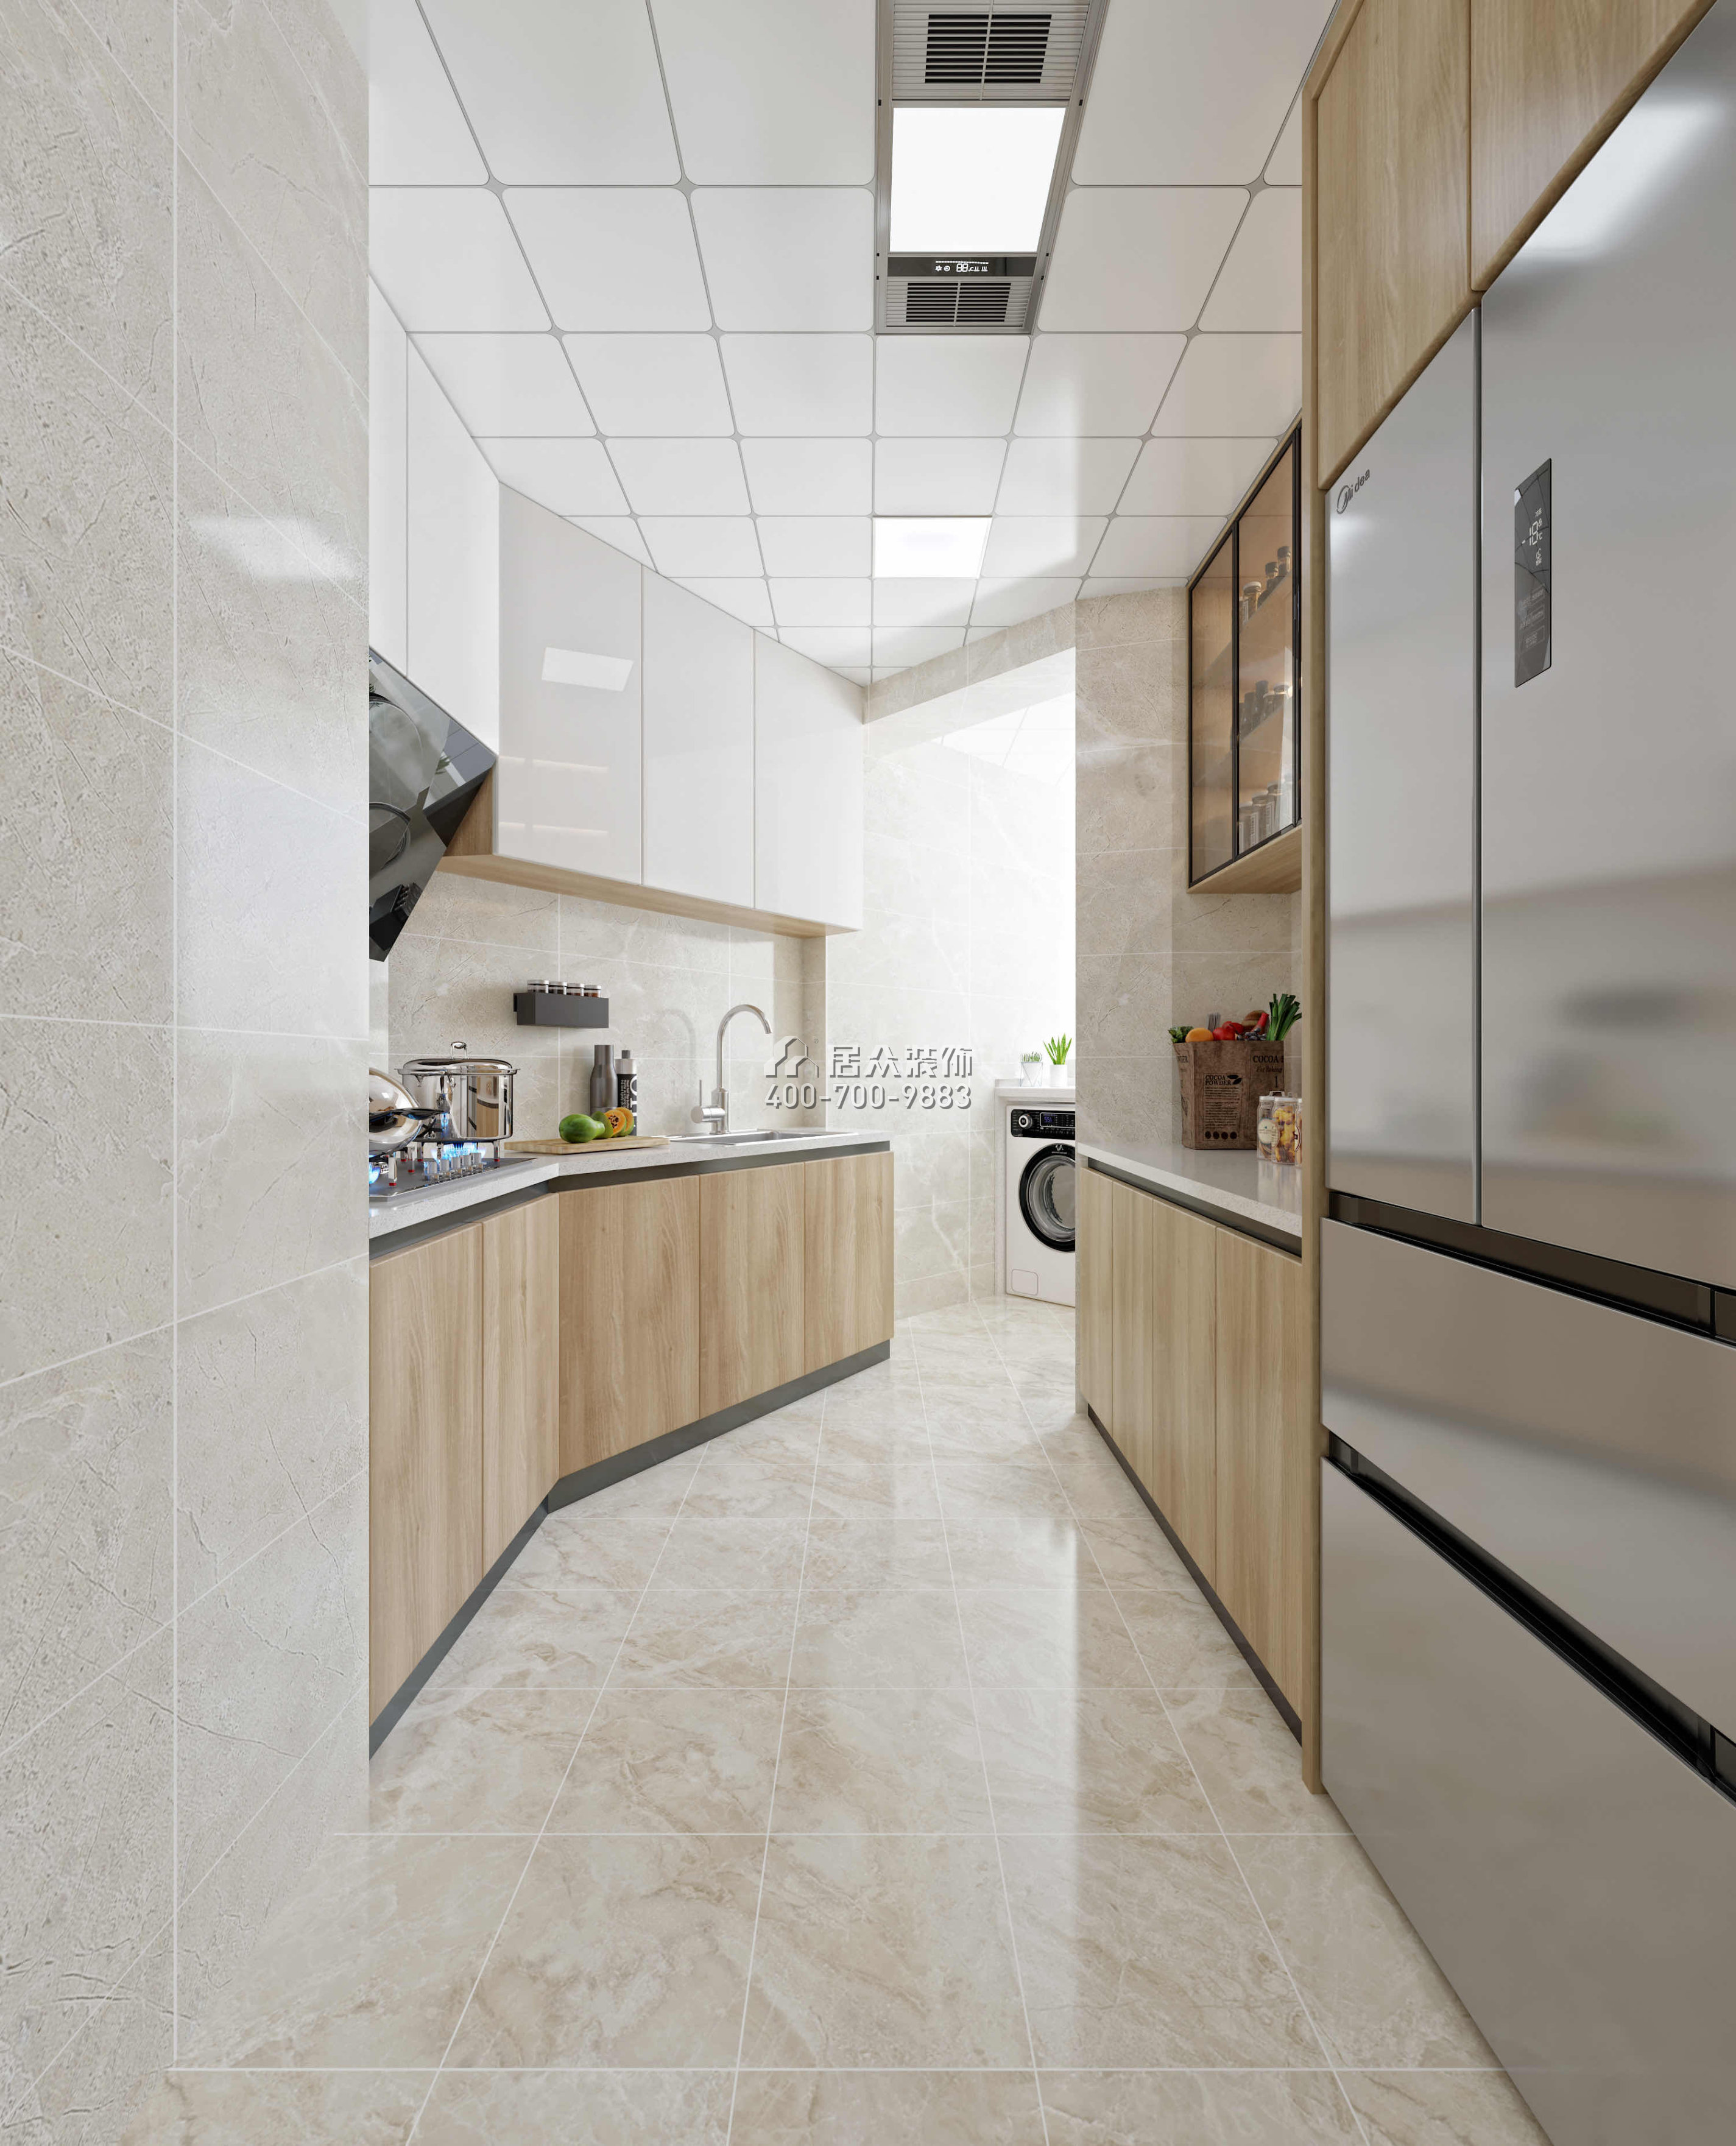 跃华园89平方米现代简约风格平层户型厨房装修效果图